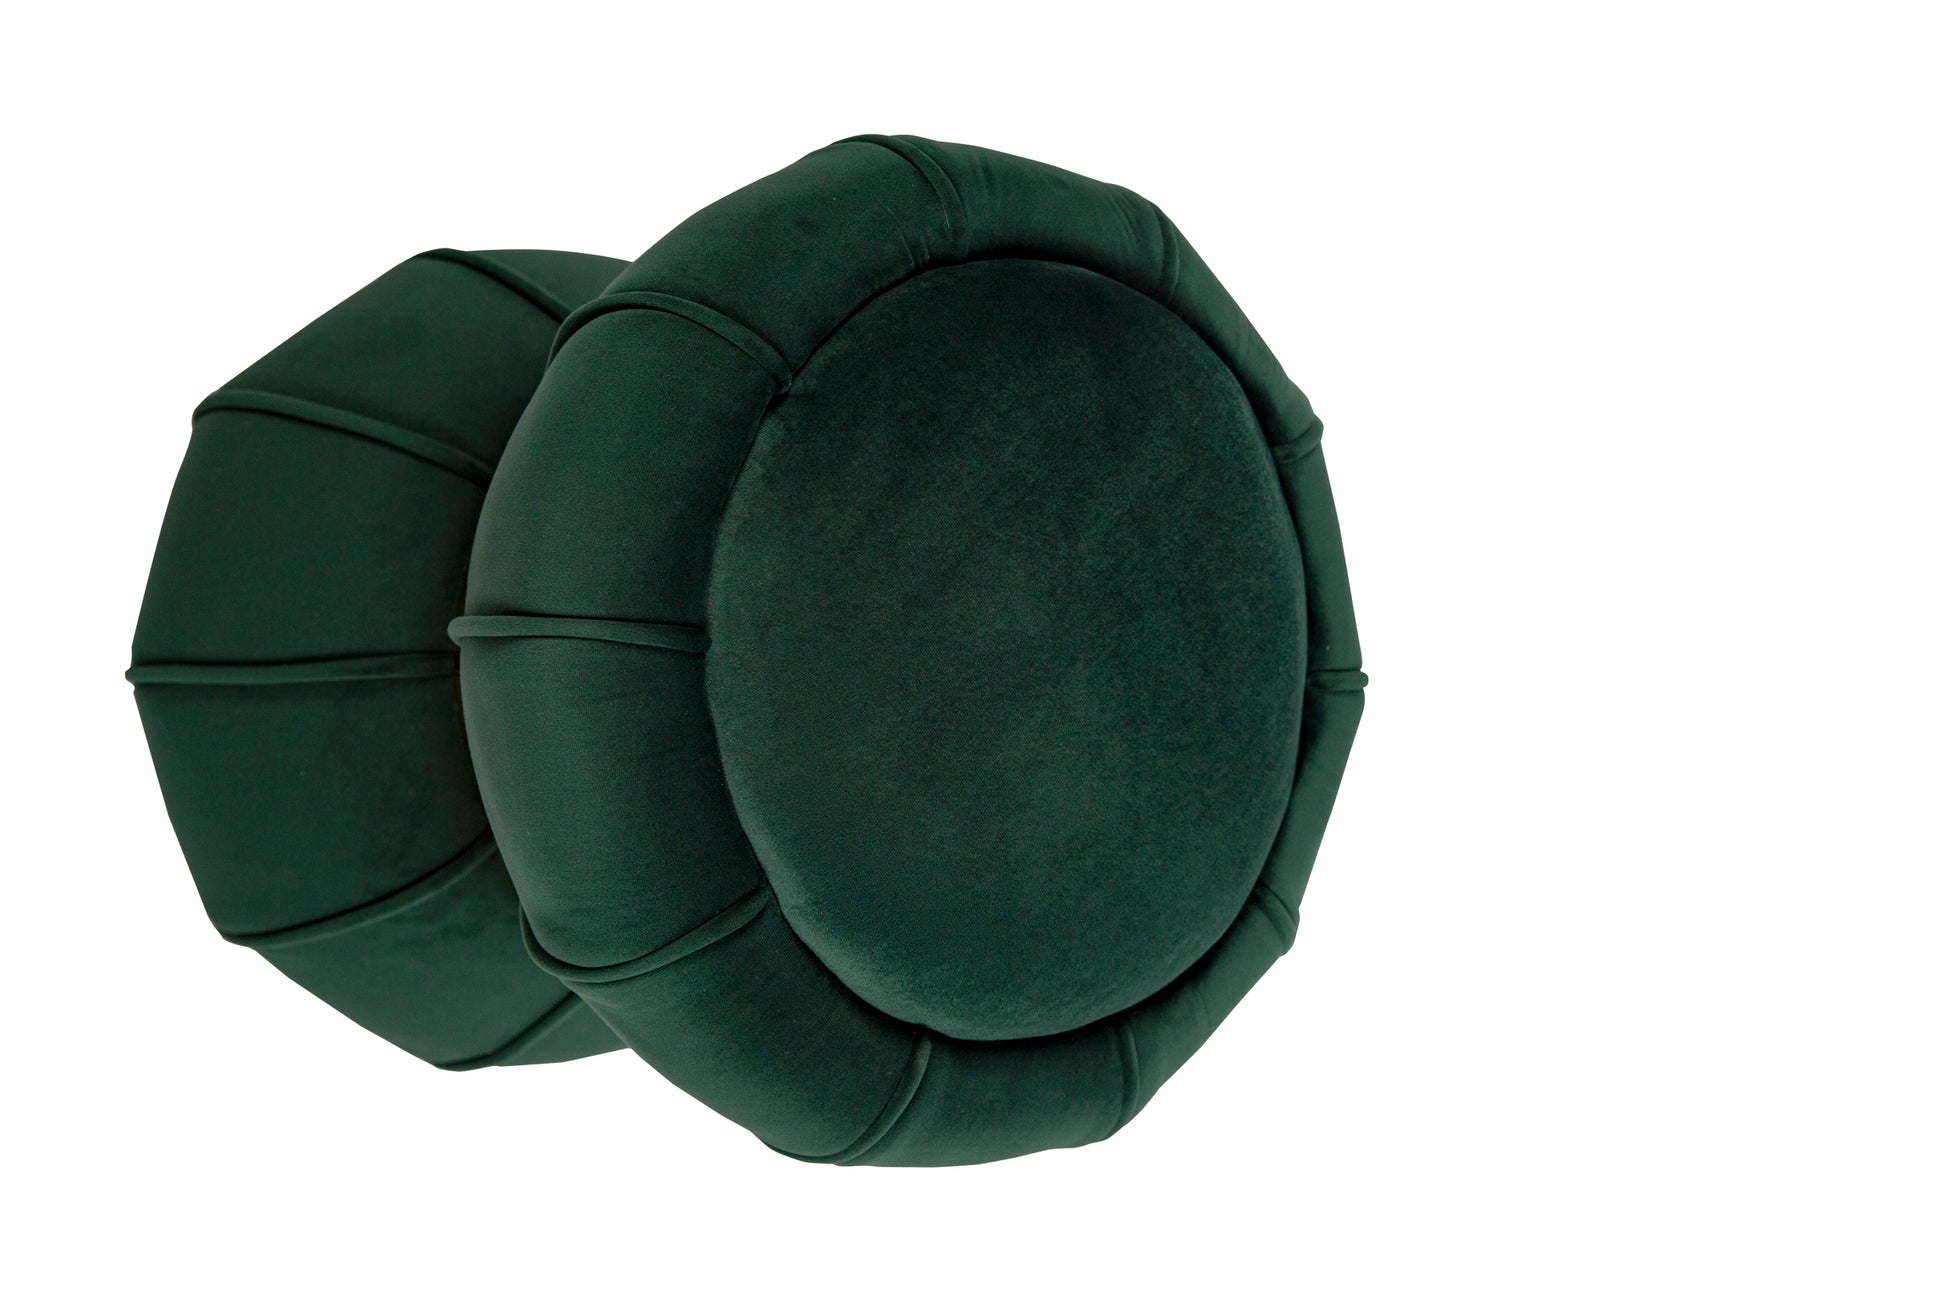 18.5'' Tall Stainless Steel Upholstered Ottoman in green-velvet